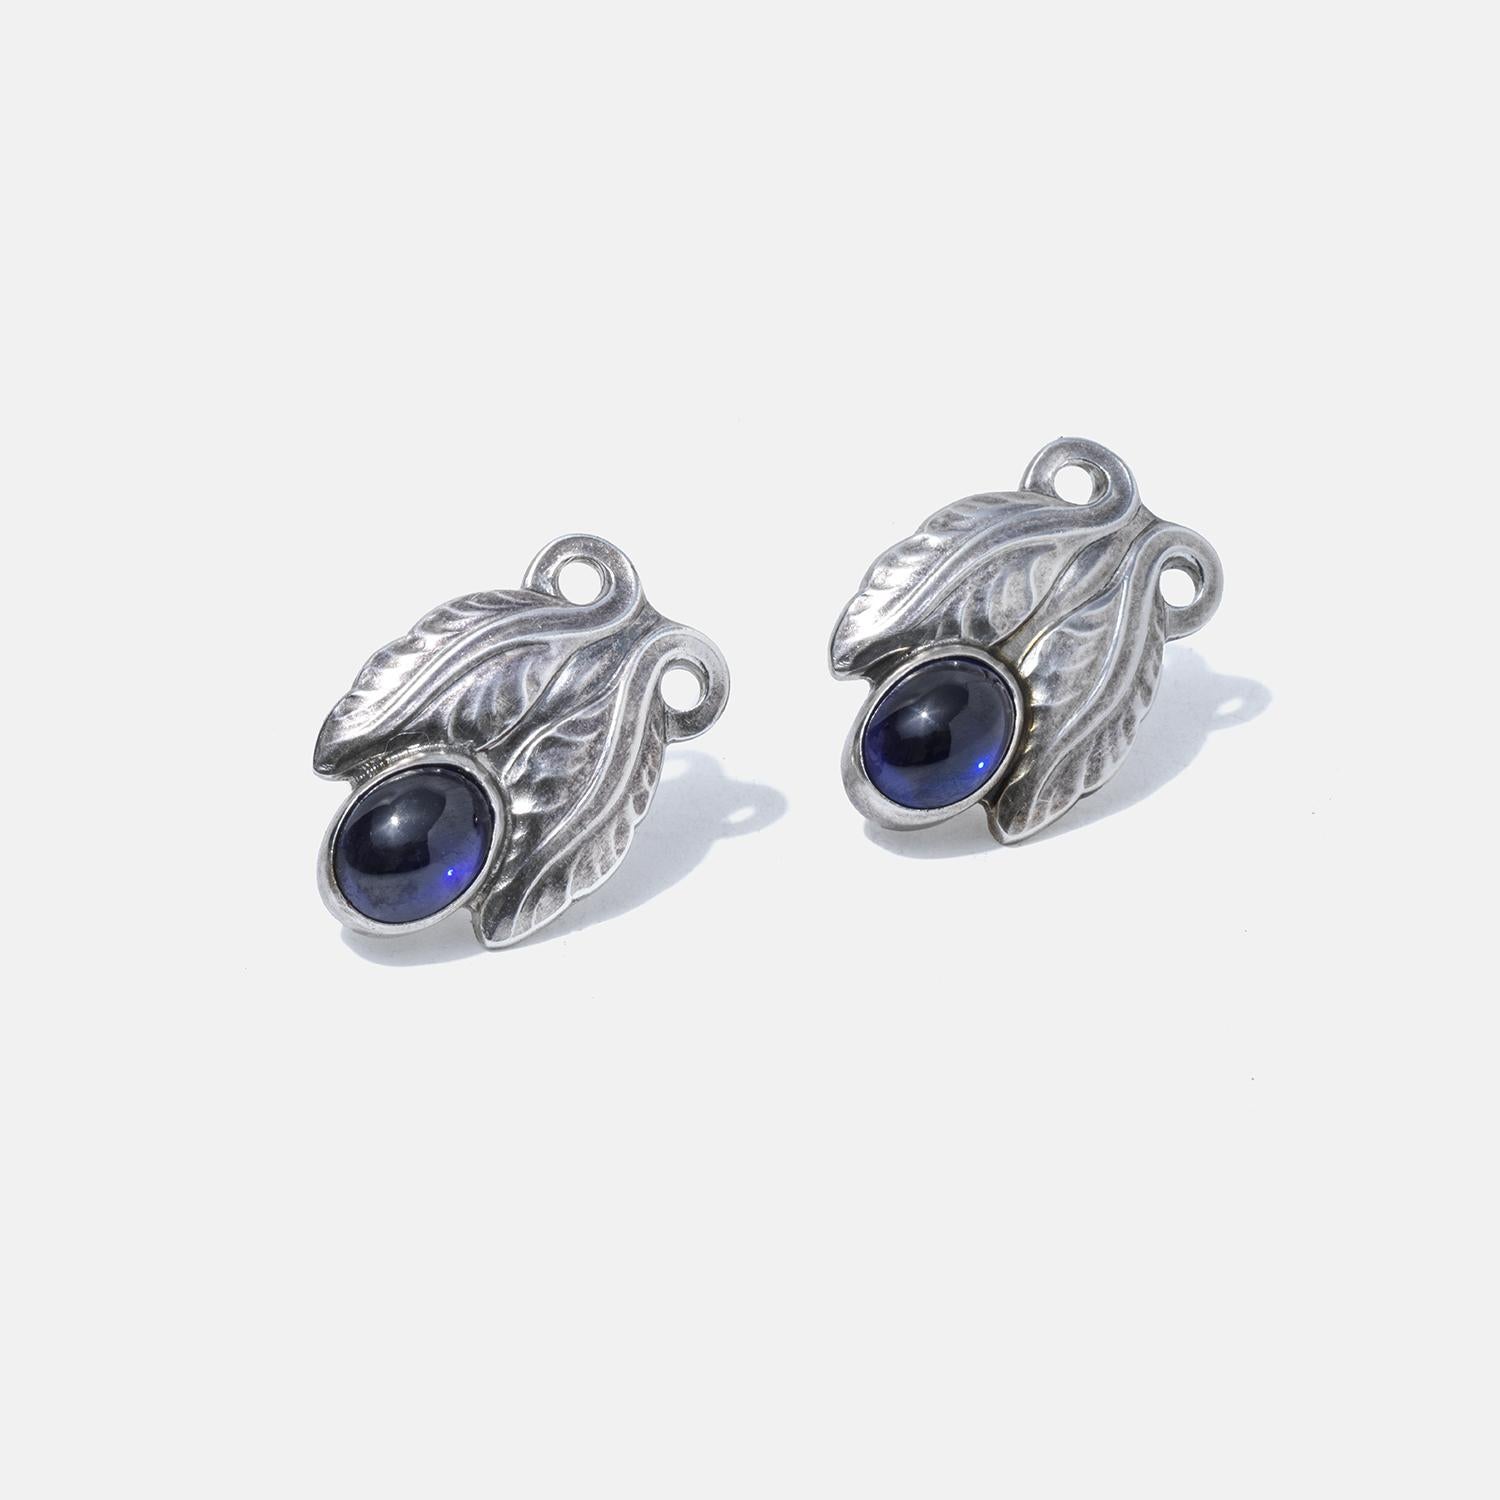 Diese Ohrringe aus Sterlingsilber sind mit tiefblauen Steinen besetzt, die in einem blattähnlichen Design eingebettet sind und einen Hauch von naturinspirierter Eleganz vermitteln. Die filigranen Blattmuster umschließen die Steine und spiegeln eine